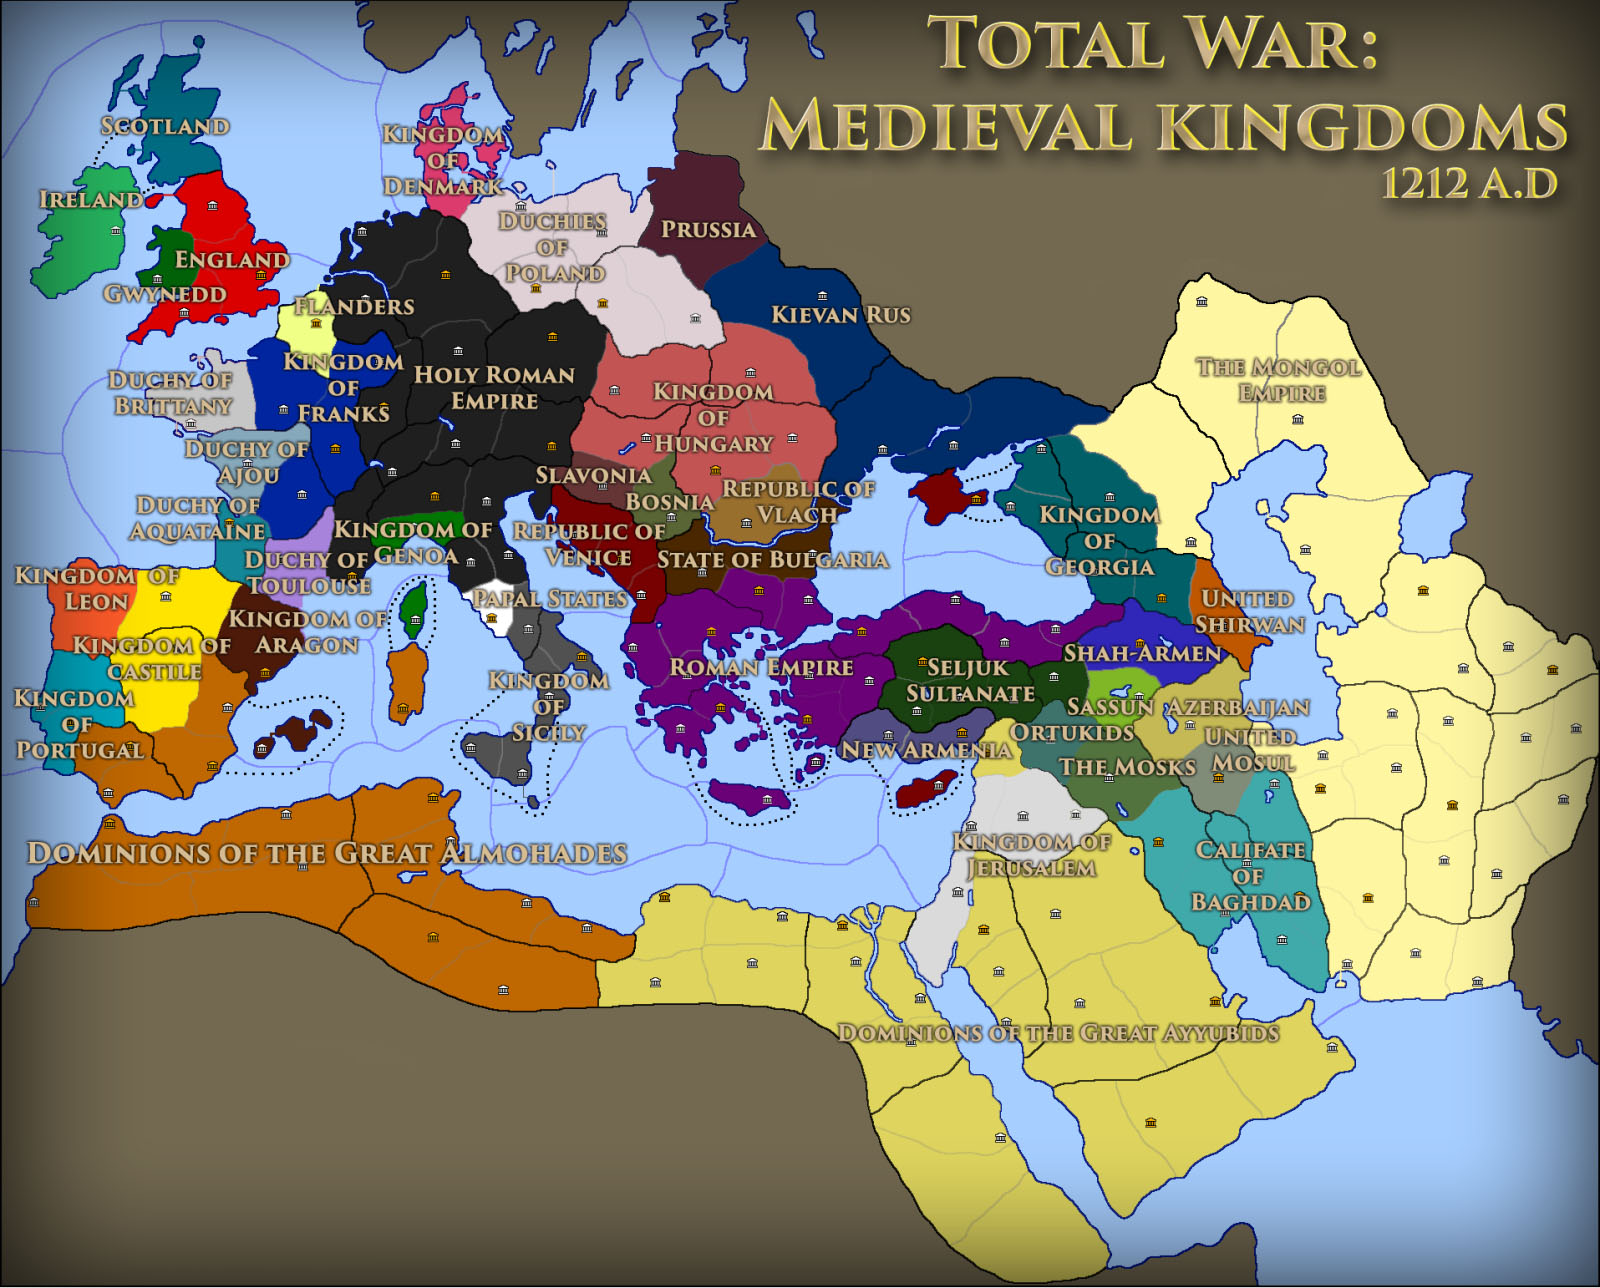 medieval kingdoms total war 1212 ad units pdf